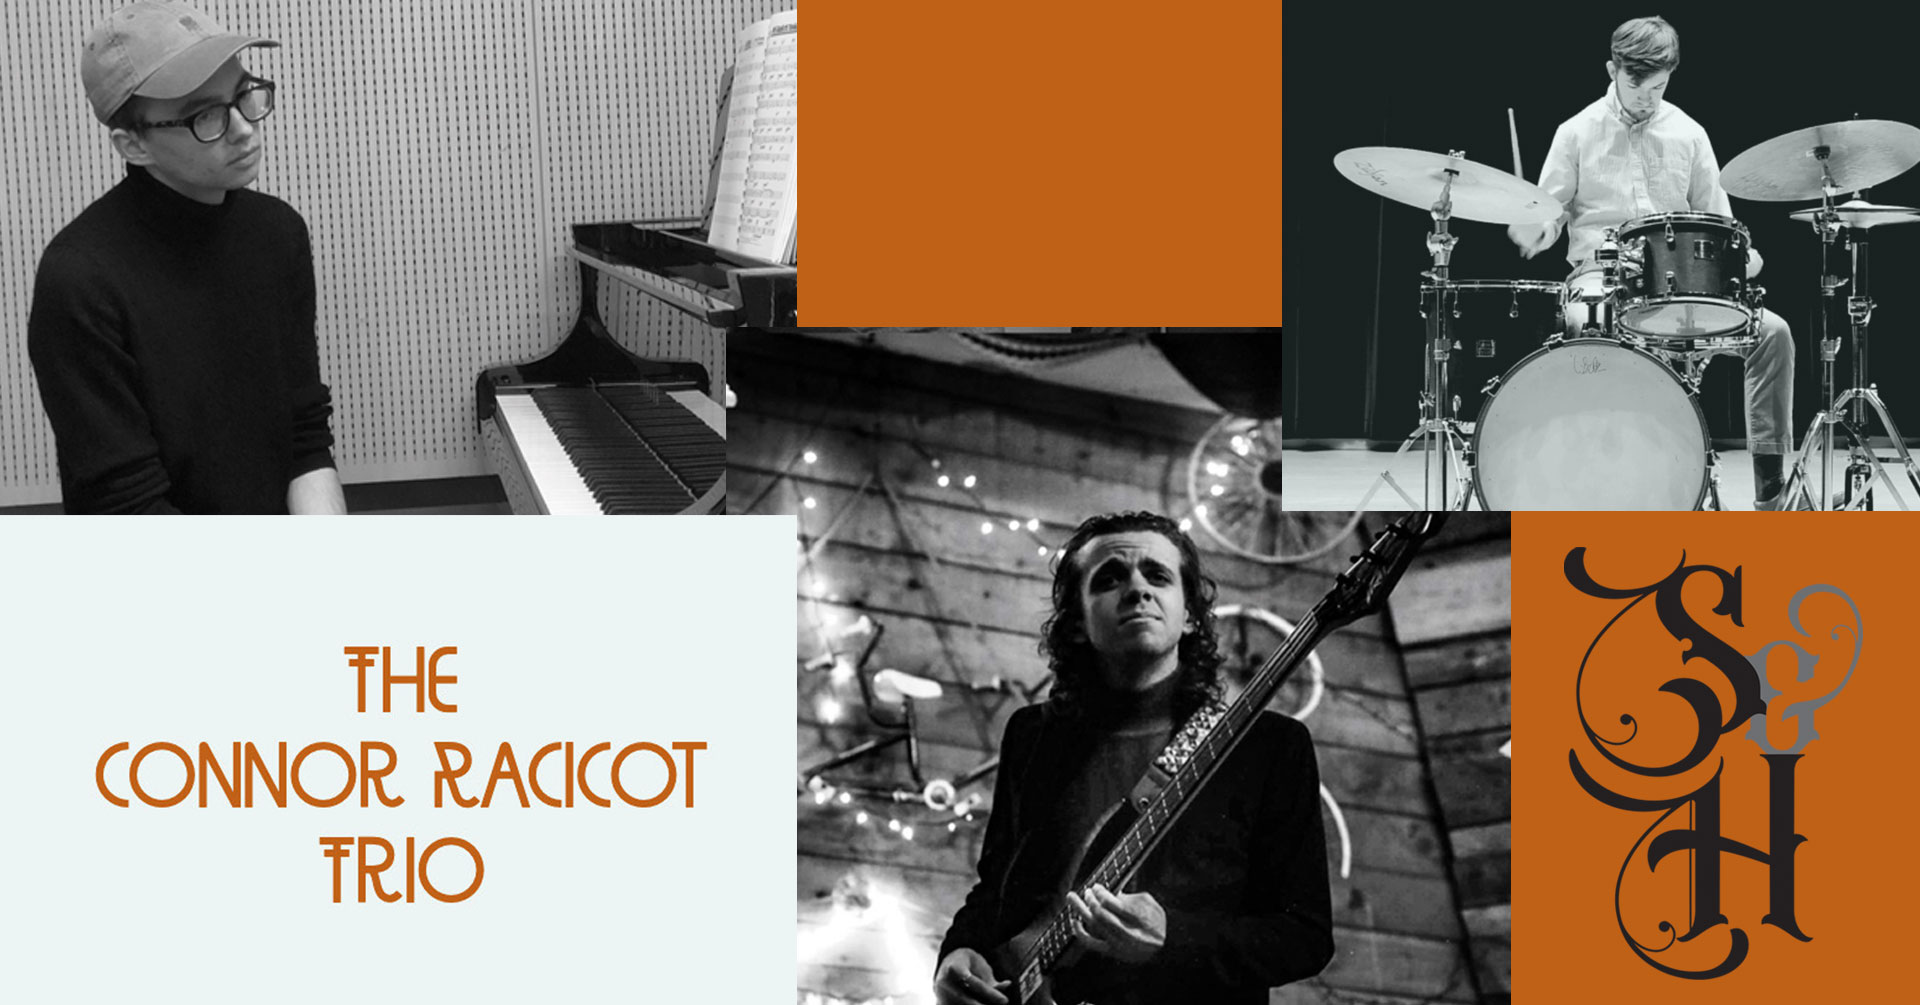 The Connor Racicot Trio